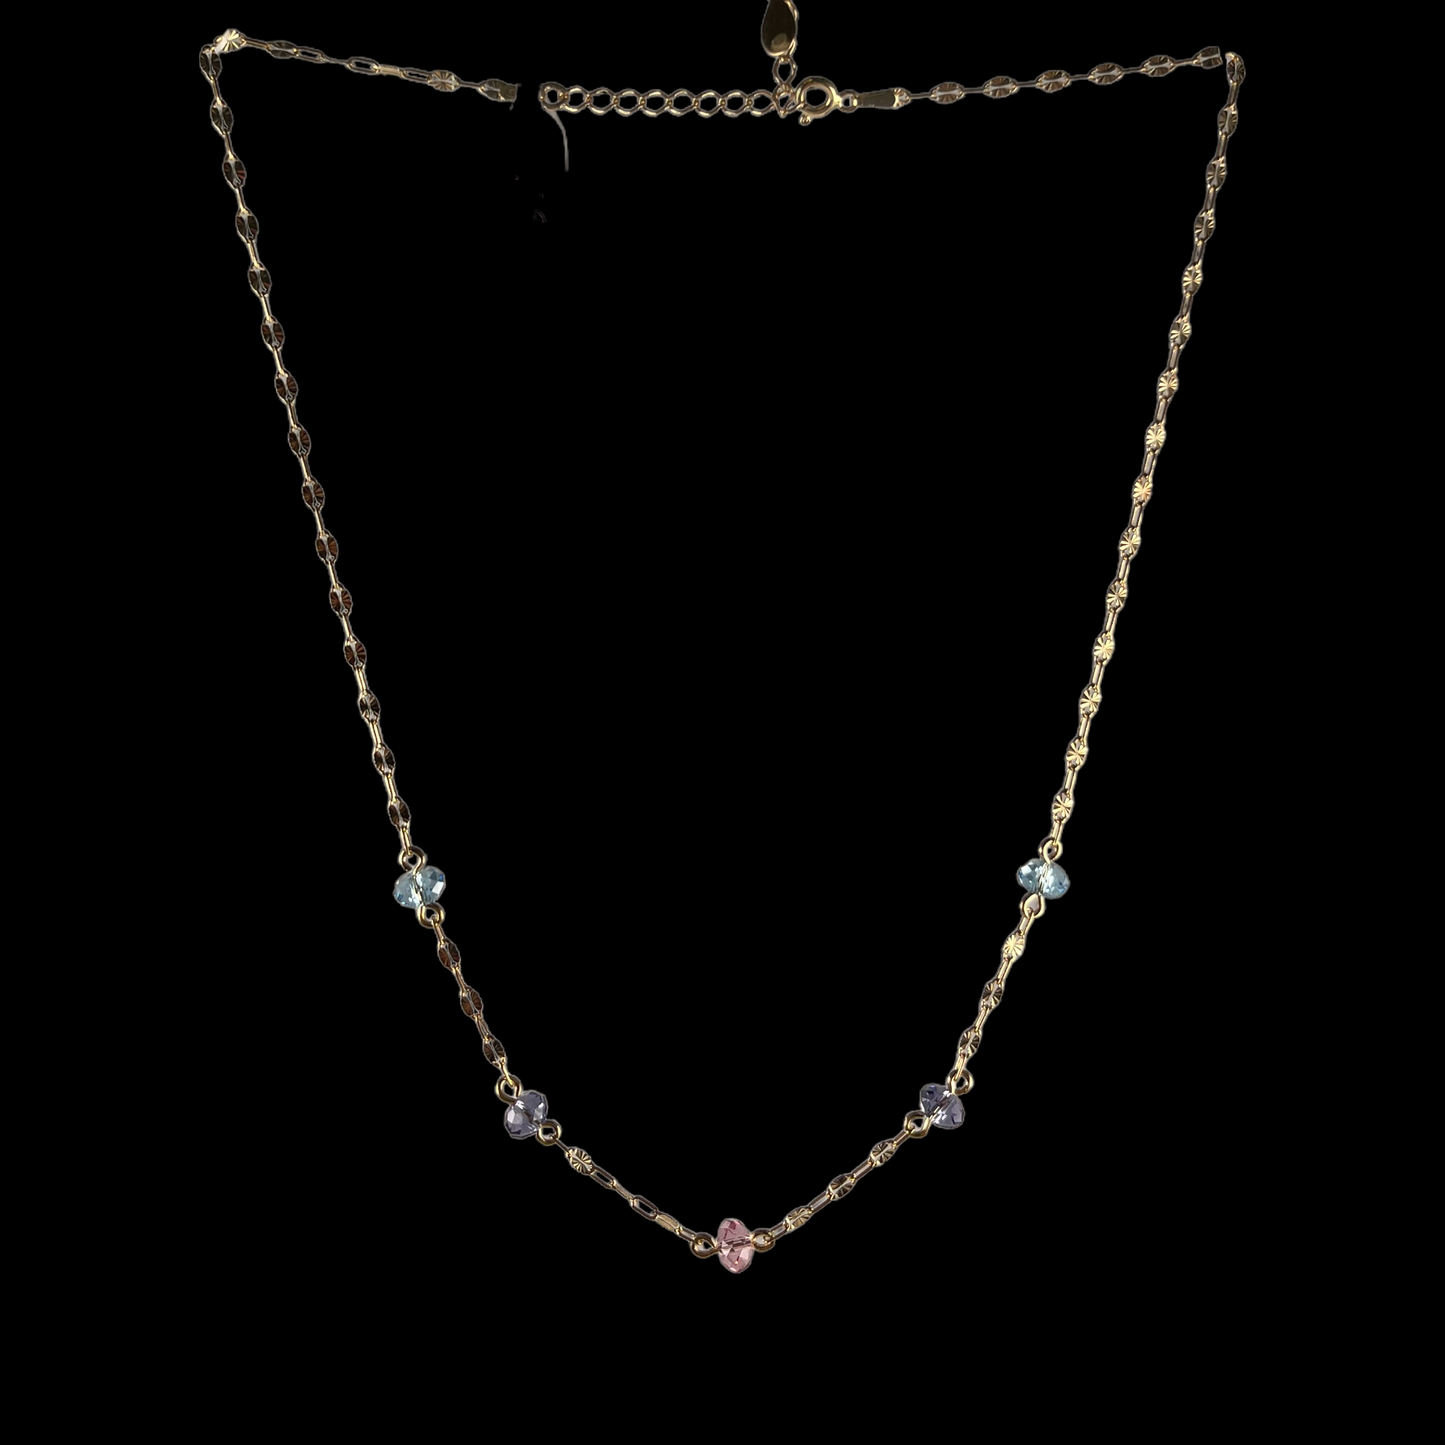 Collier avec cristaux Swarovski, collection ELLA, J252, argent doré